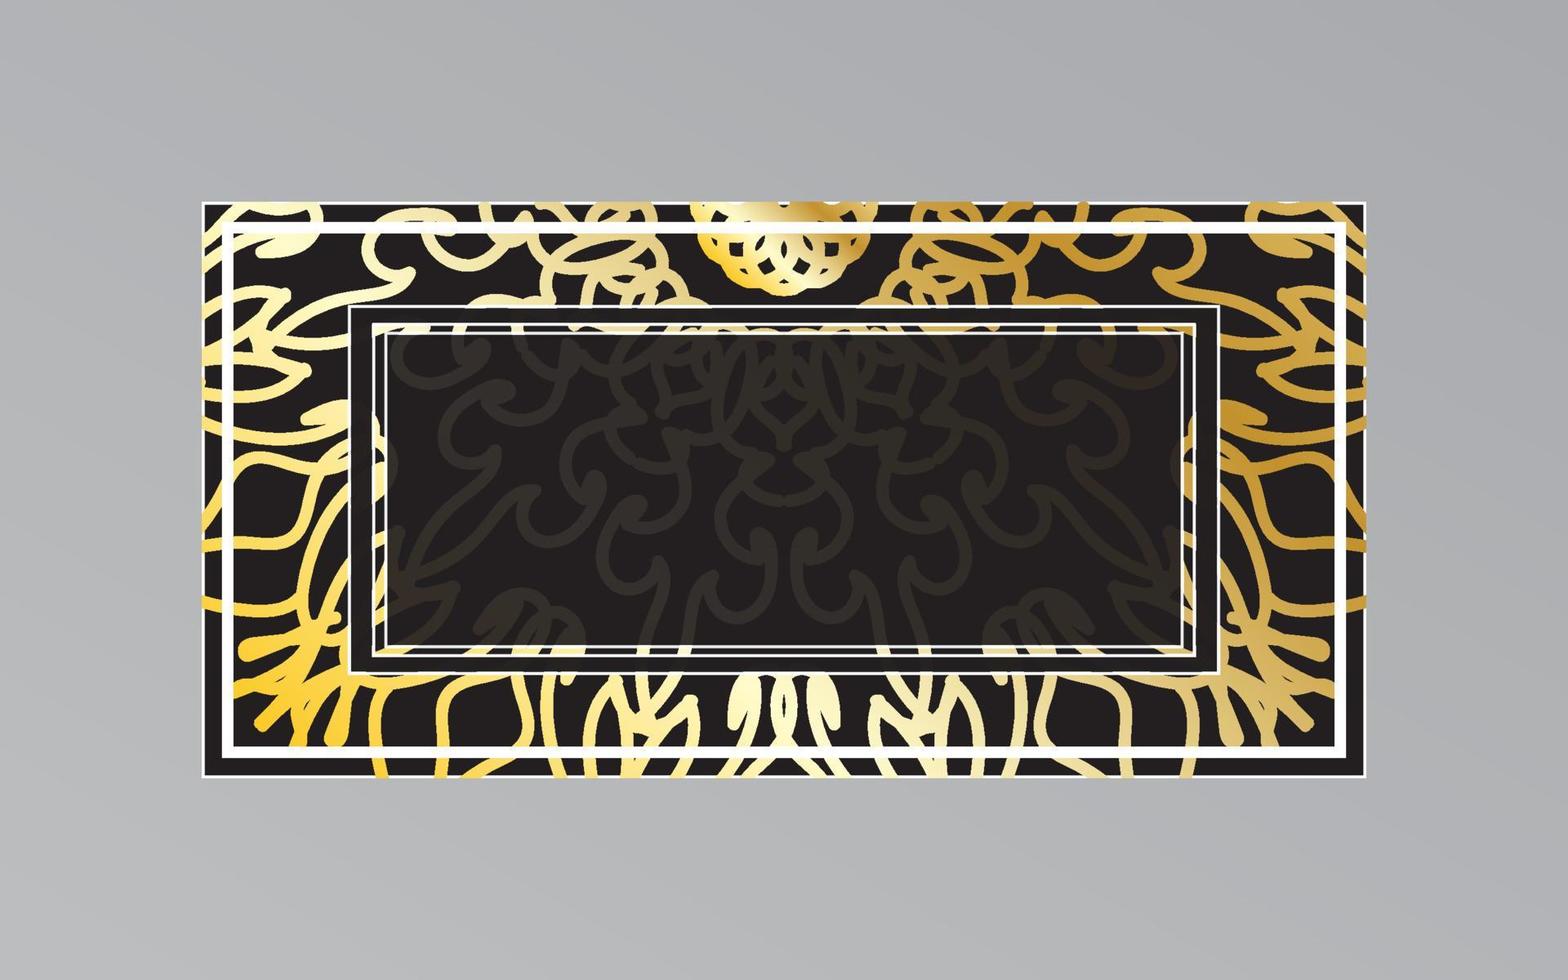 marco dorado en la pared en estilo mandala. vector